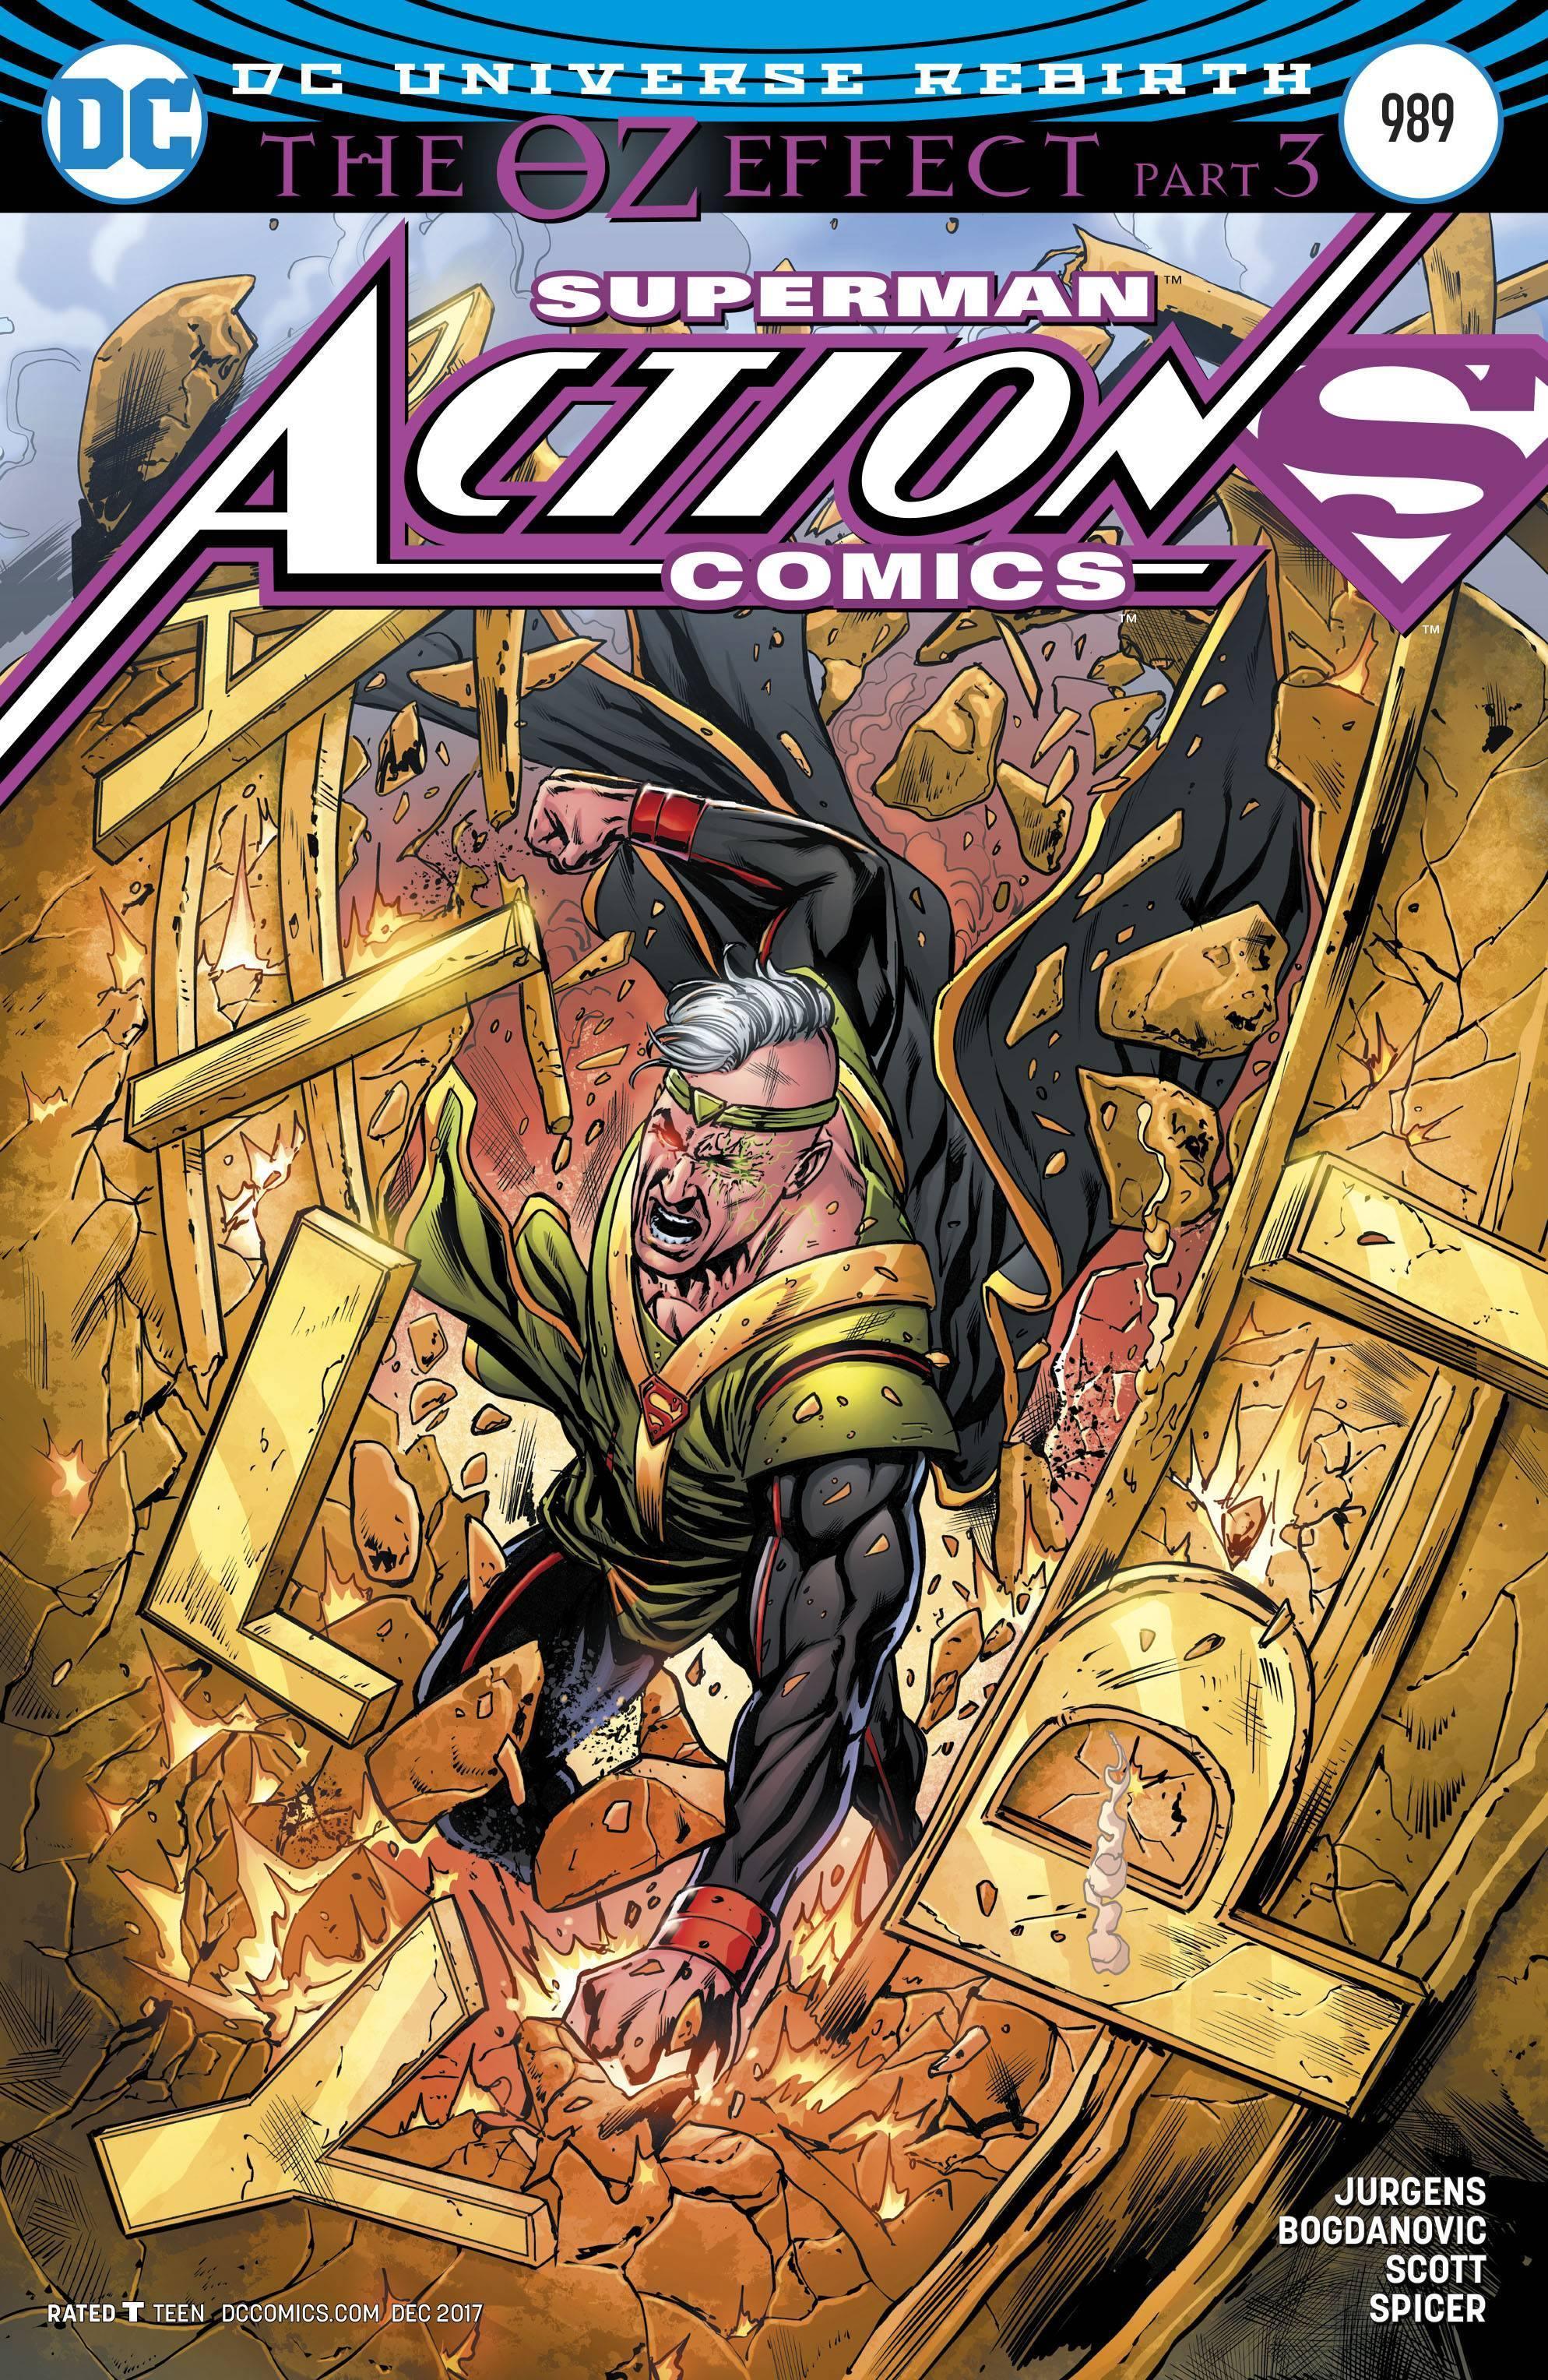 ACTION COMICS VOL 2 #989 VAR ED (OZ EFFECT) - Kings Comics